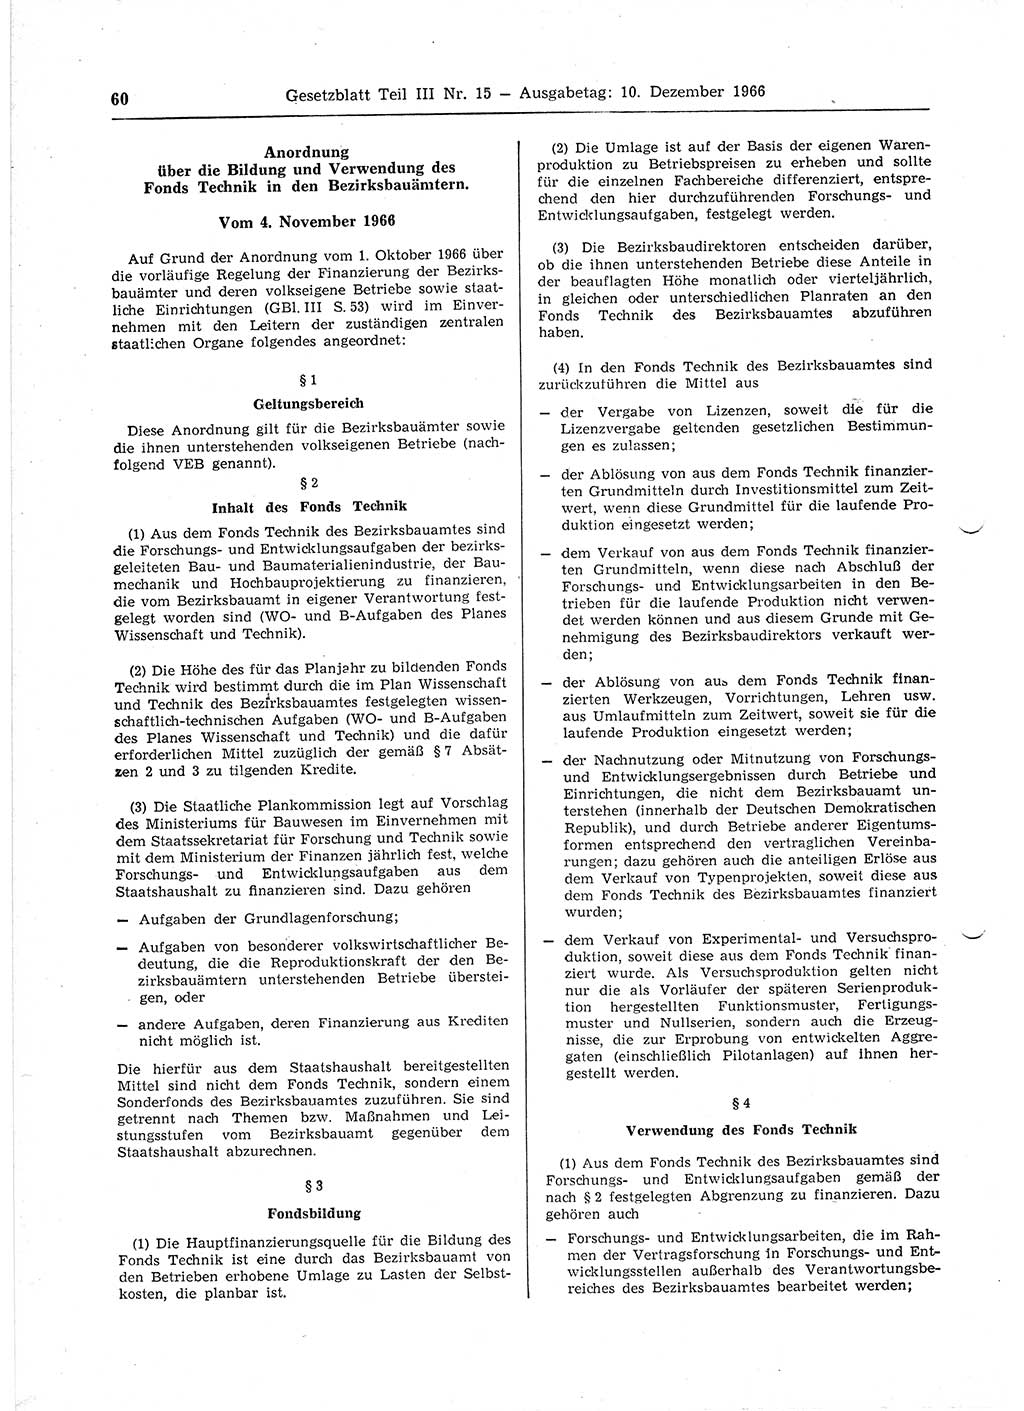 Gesetzblatt (GBl.) der Deutschen Demokratischen Republik (DDR) Teil ⅠⅠⅠ 1966, Seite 60 (GBl. DDR ⅠⅠⅠ 1966, S. 60)